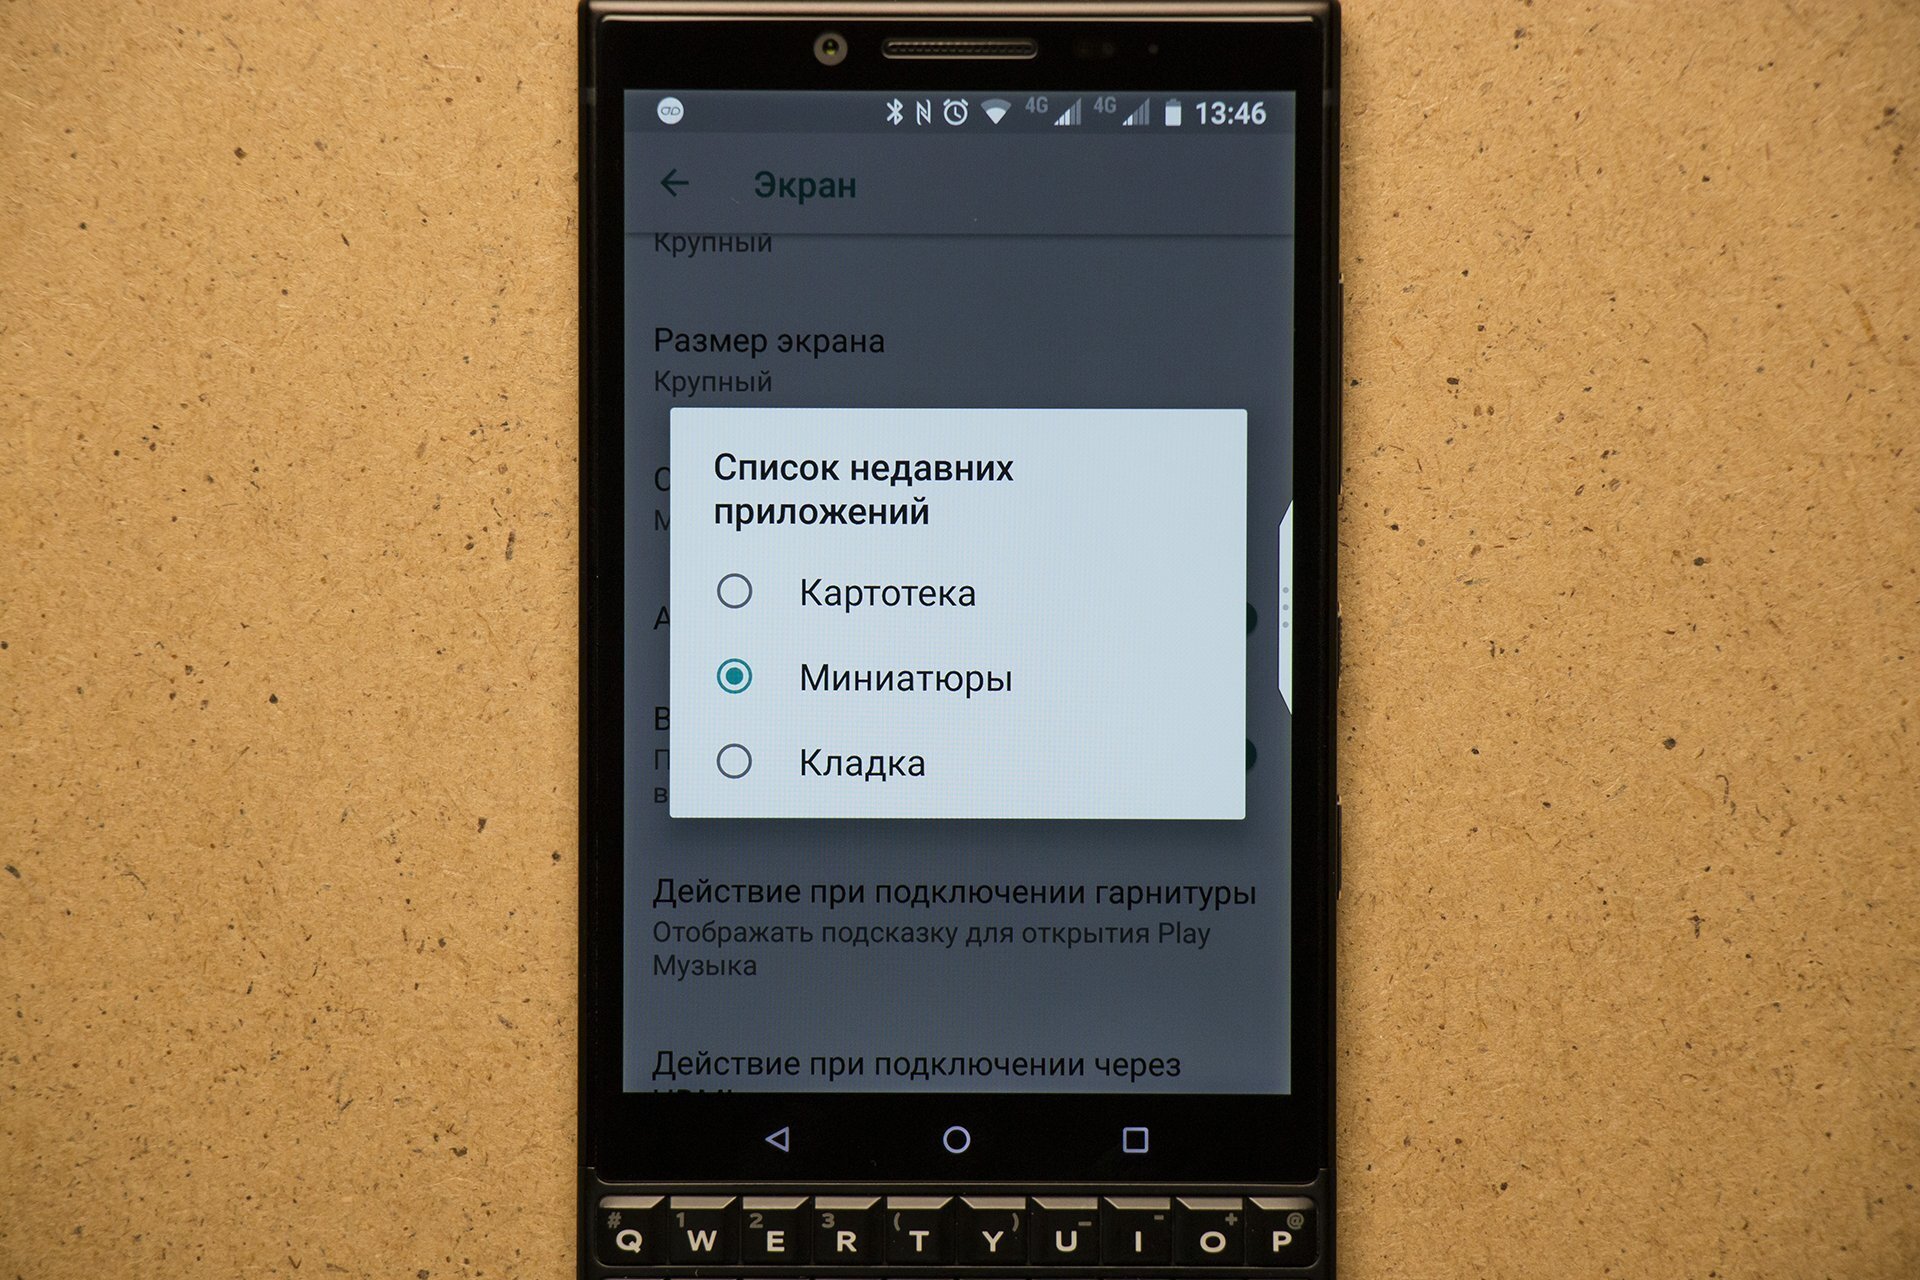 Как изменить экран свернутых приложении на BlackBerry: Картотека, Миниатюры, Кладка